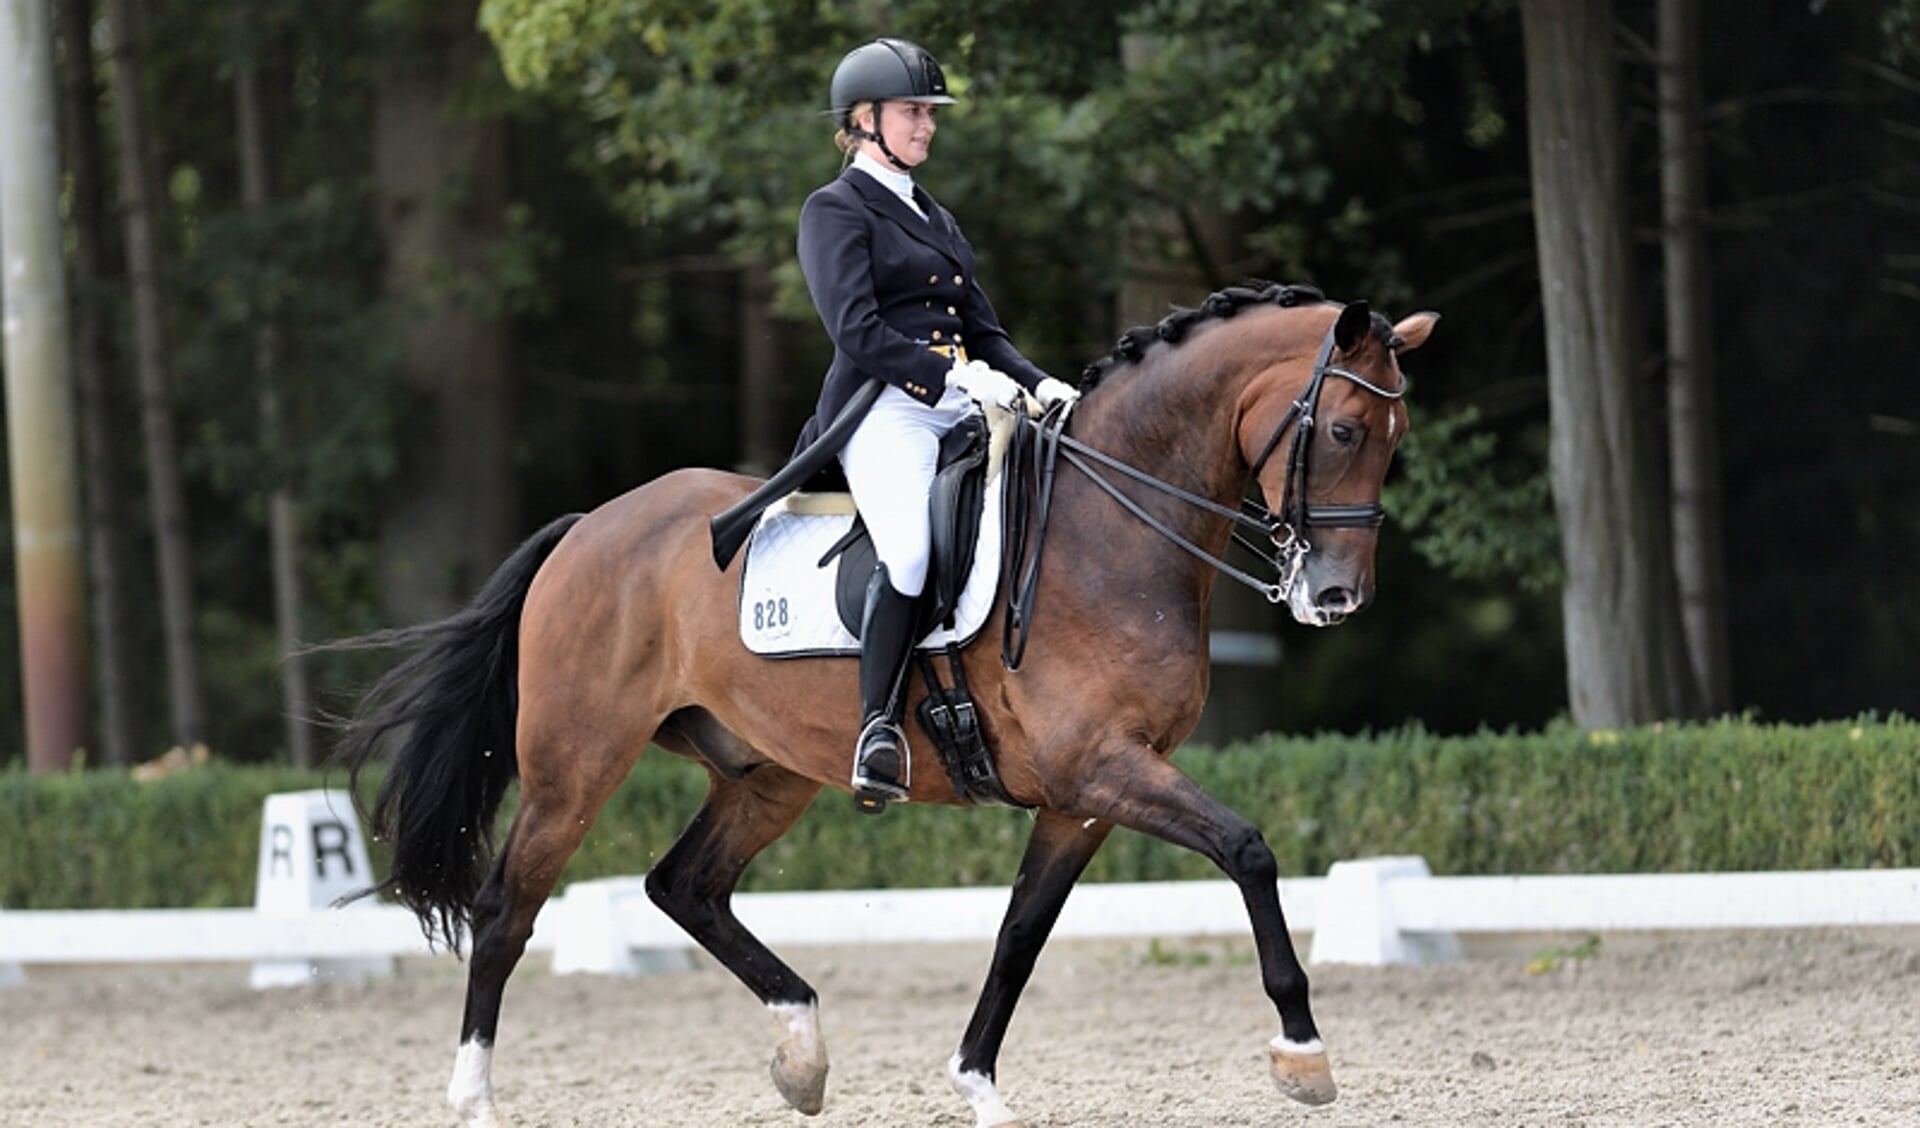 Marijn met paard Bazinni tijdens een dressuurproef in 2017 in Emmeloord (niveau Prix St. Georges).